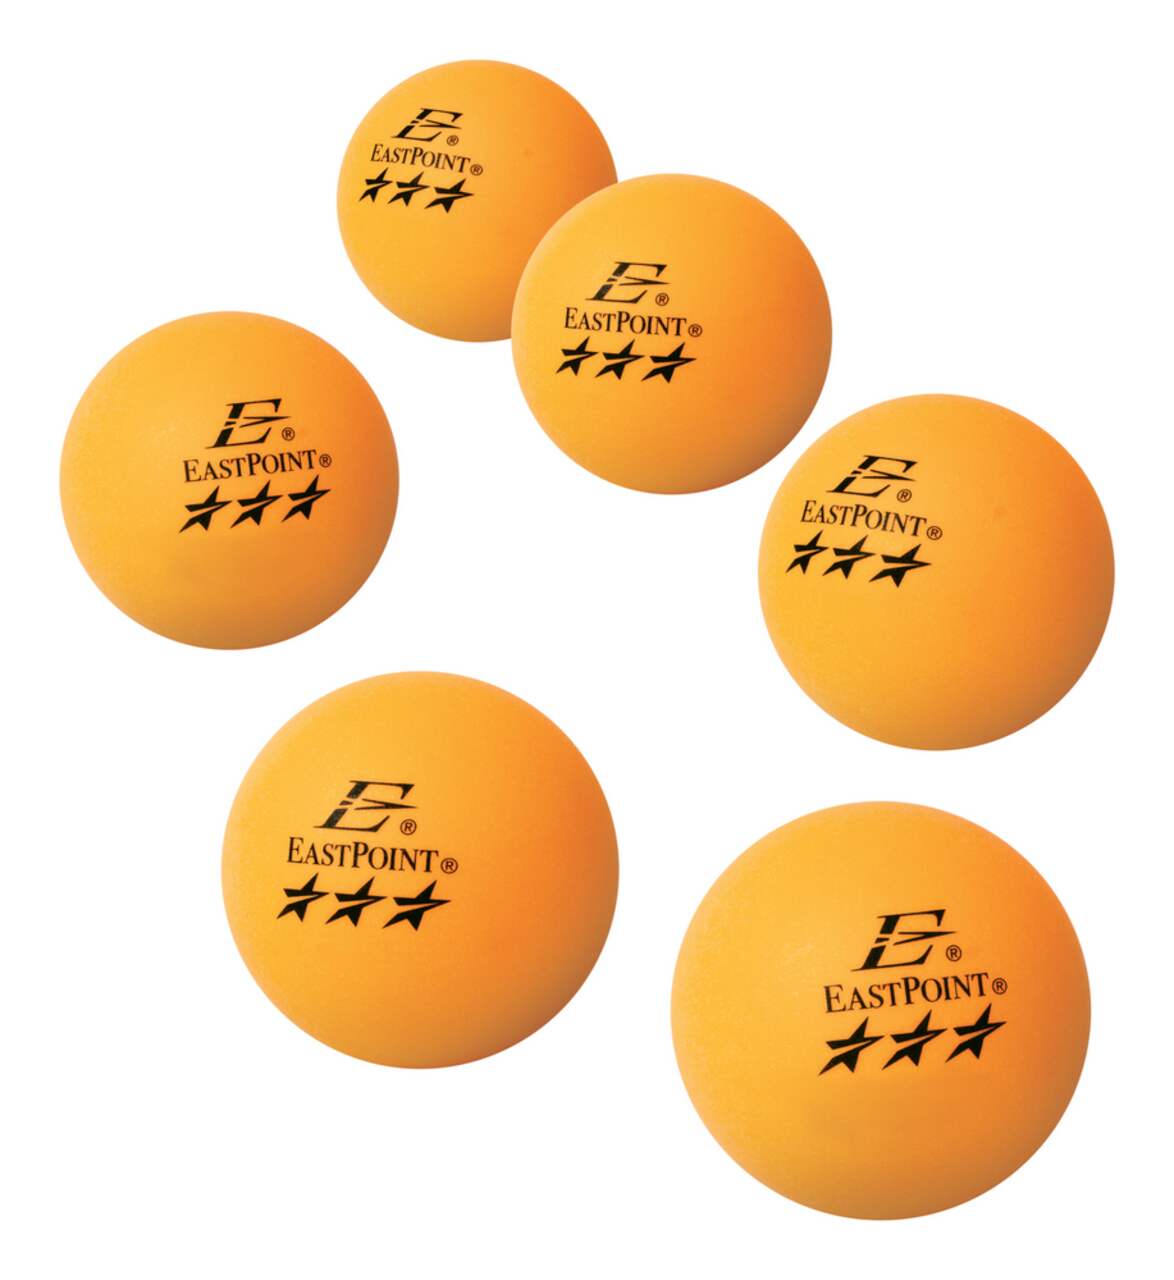 boule de ping pong lumineuse Pour tous les types de jeu - Alibaba.com